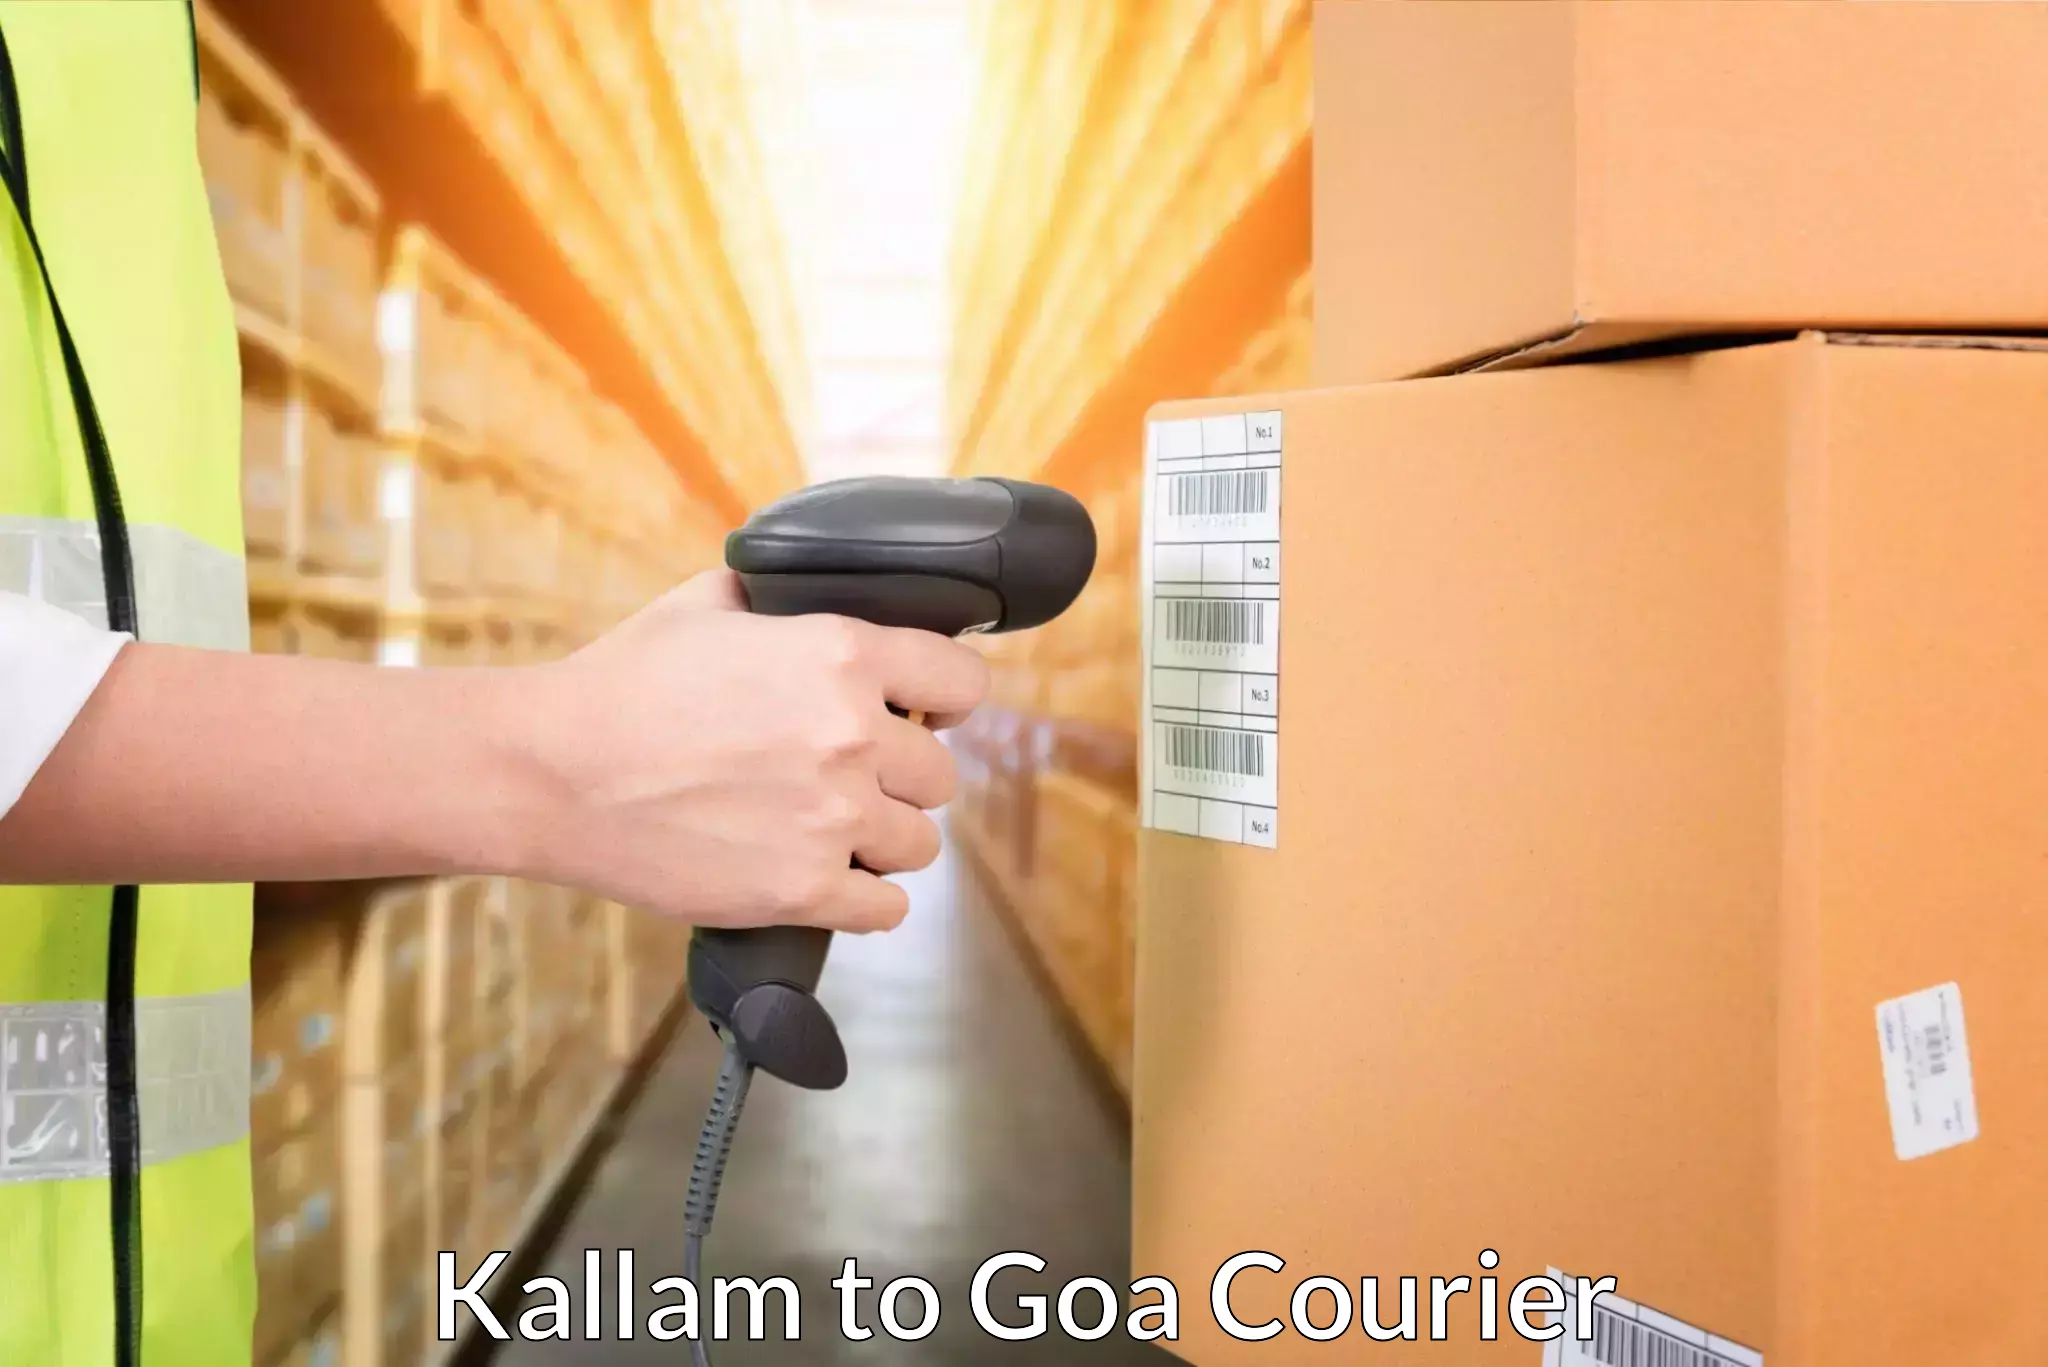 Door-to-door freight service Kallam to Goa